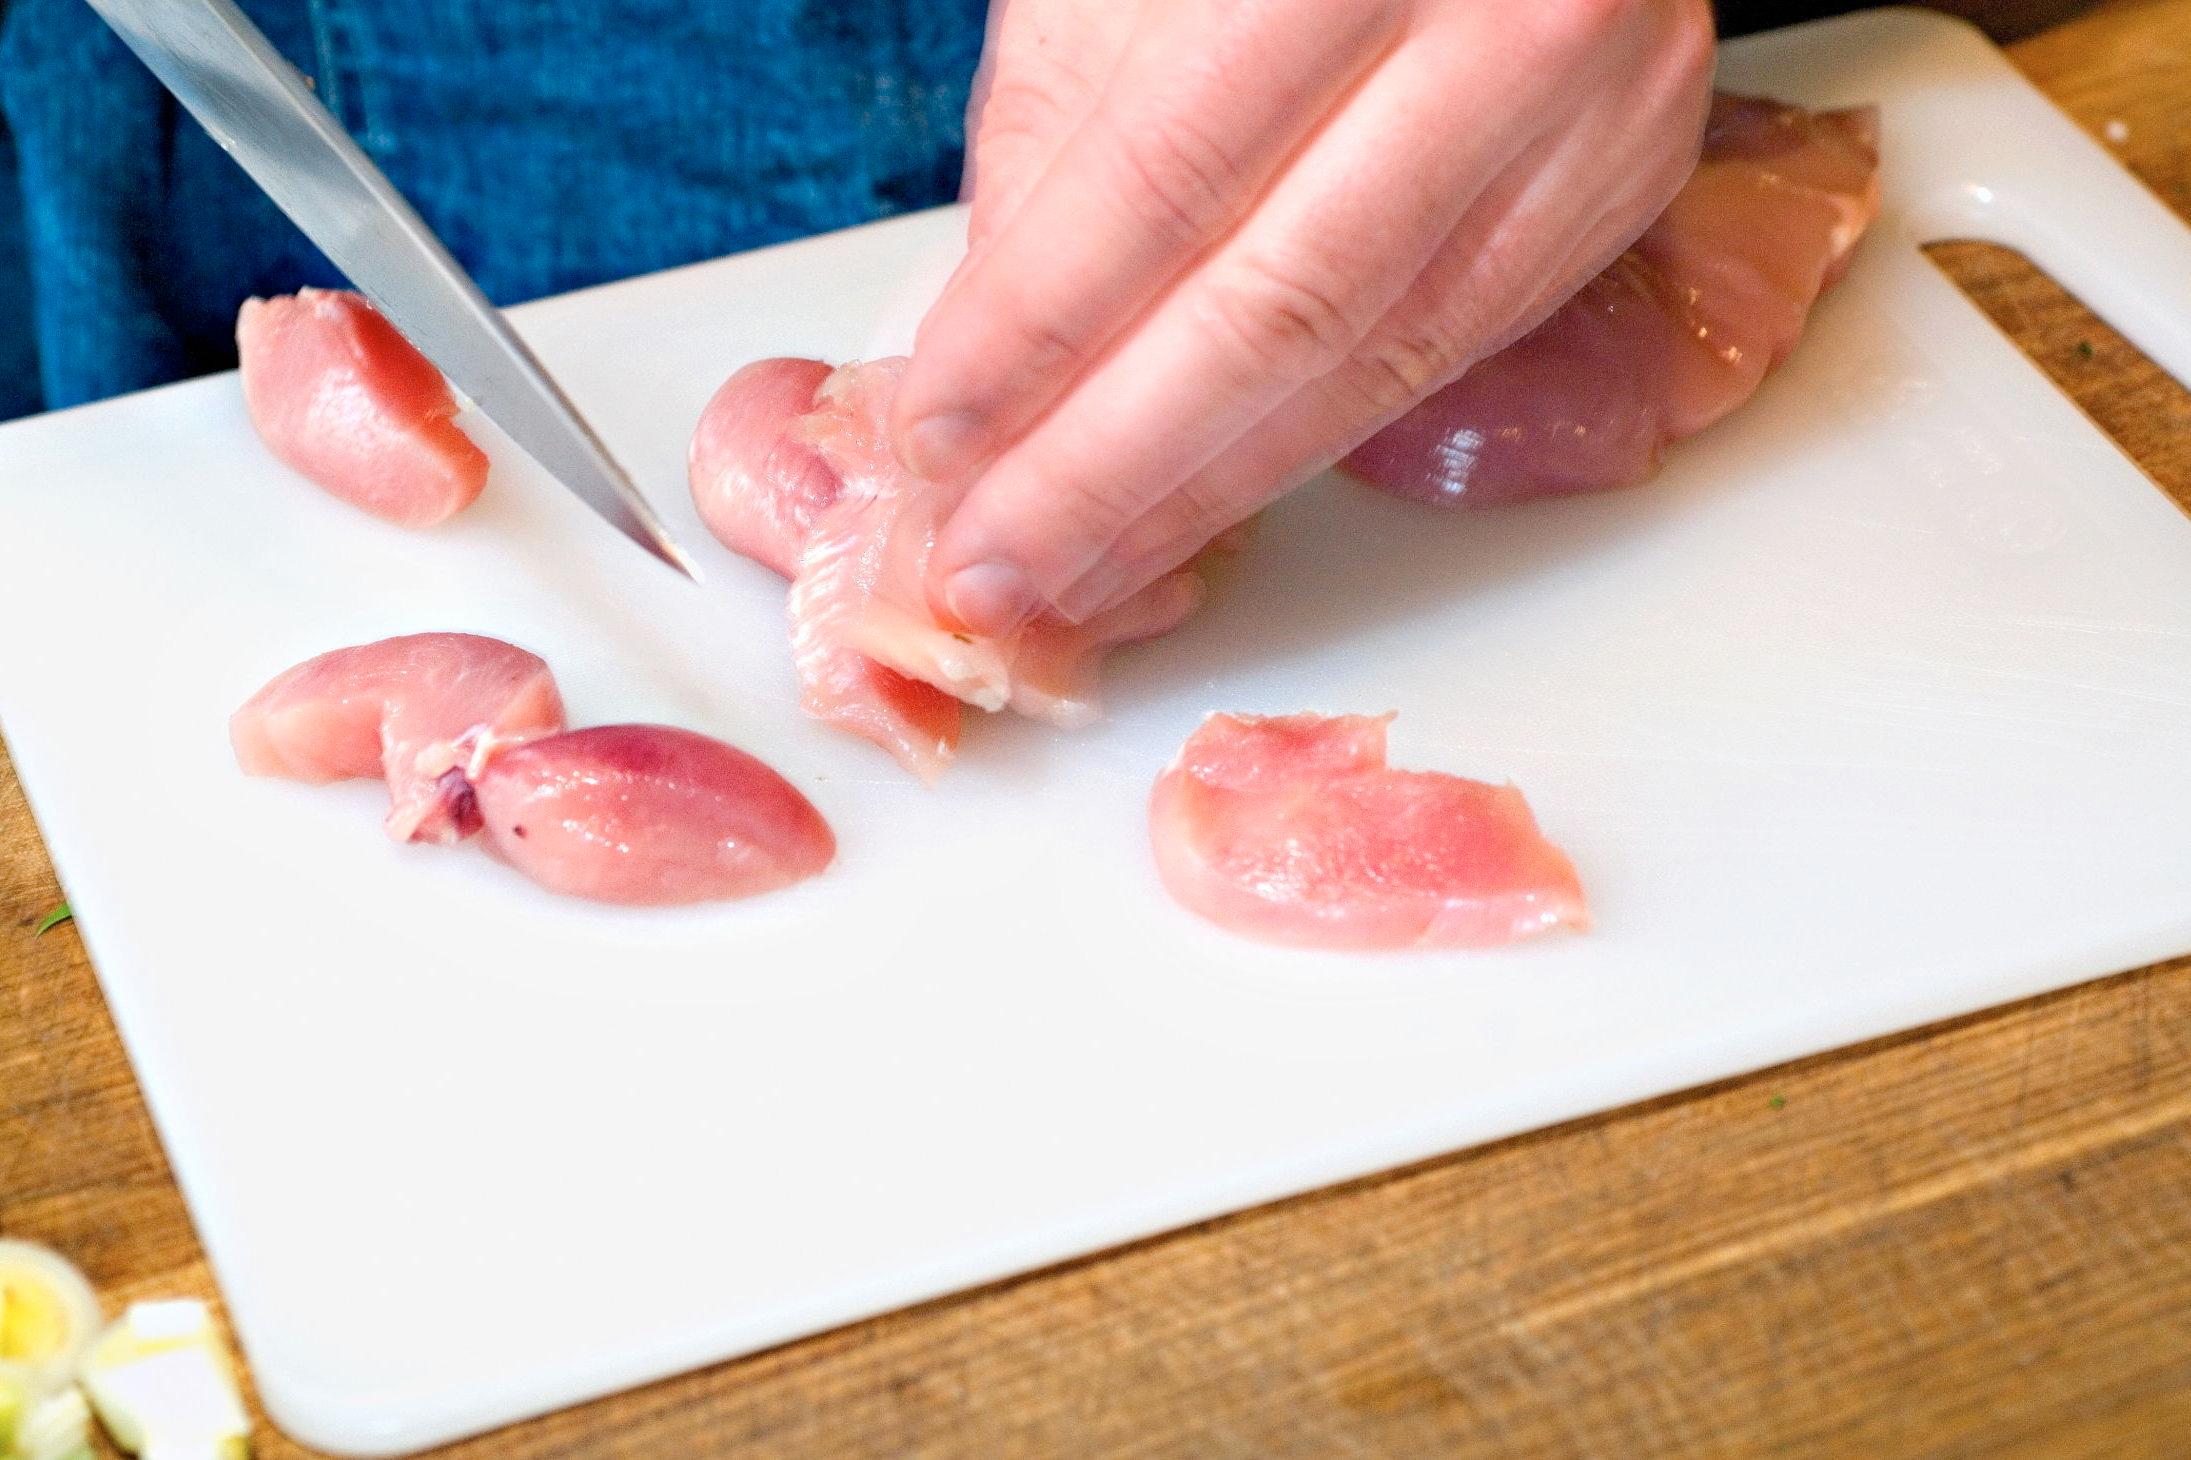 PASS PÅ: Ha et eget skjærebrett til rått kjøtt, og vask hendene dine etter at du har tatt på rå kylling. Foto: Bjørn Thunæs/VG